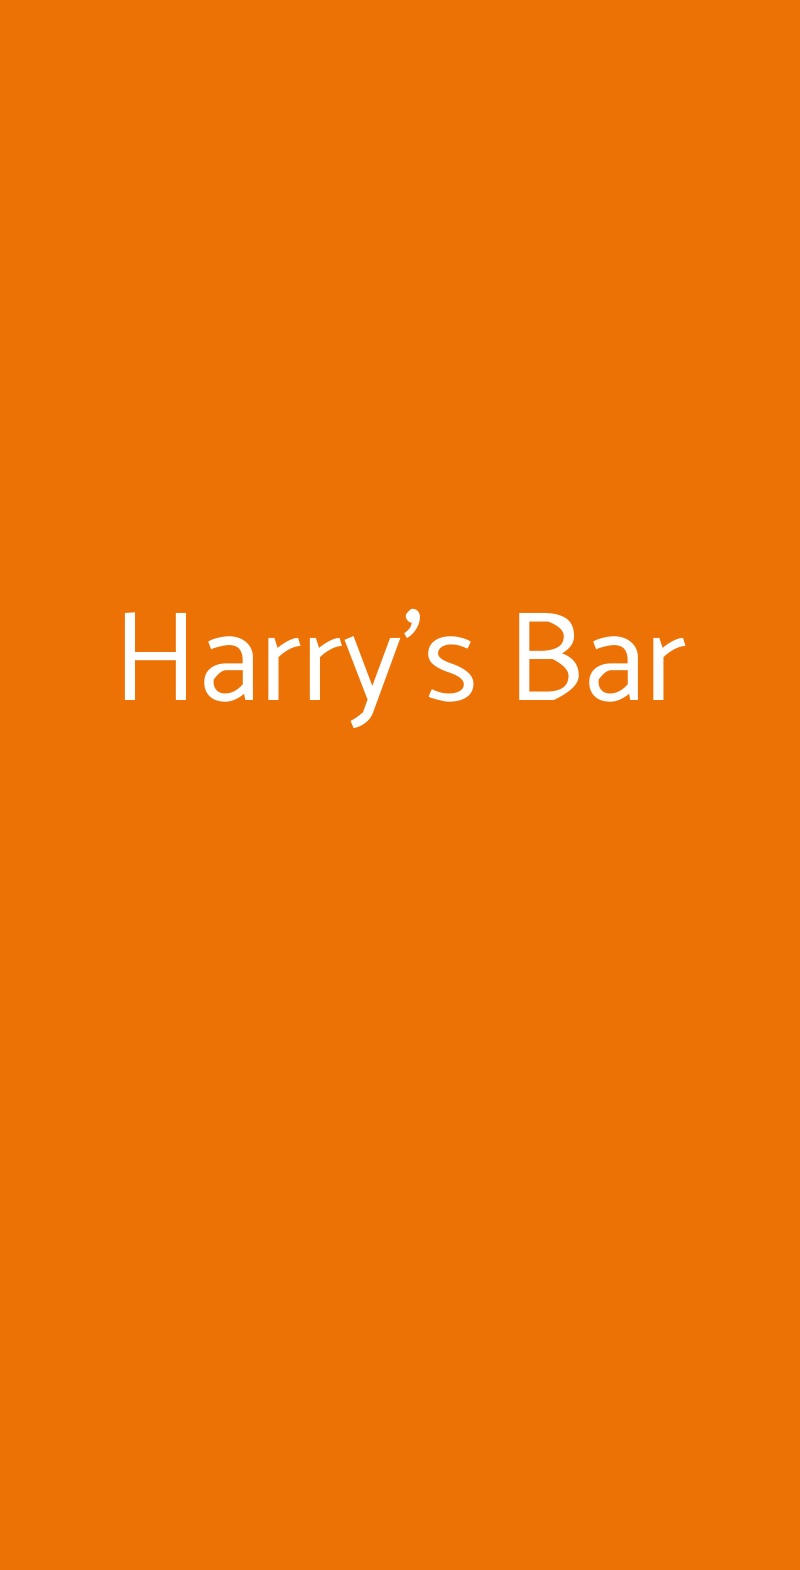 Harry's Bar Firenze menù 1 pagina